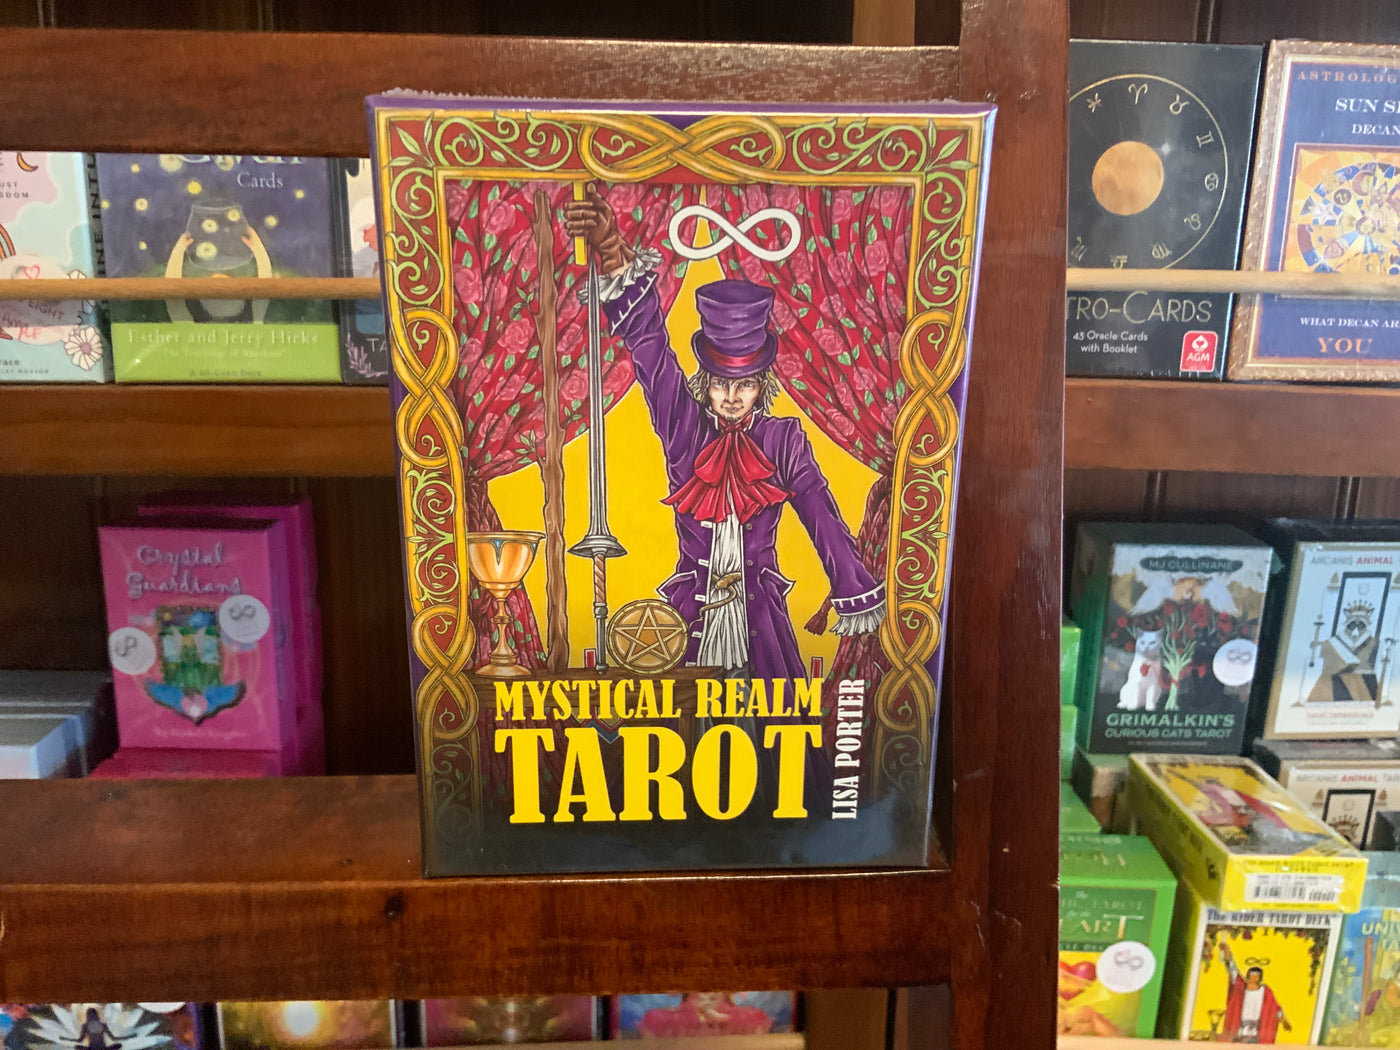 Mystical realm tarot